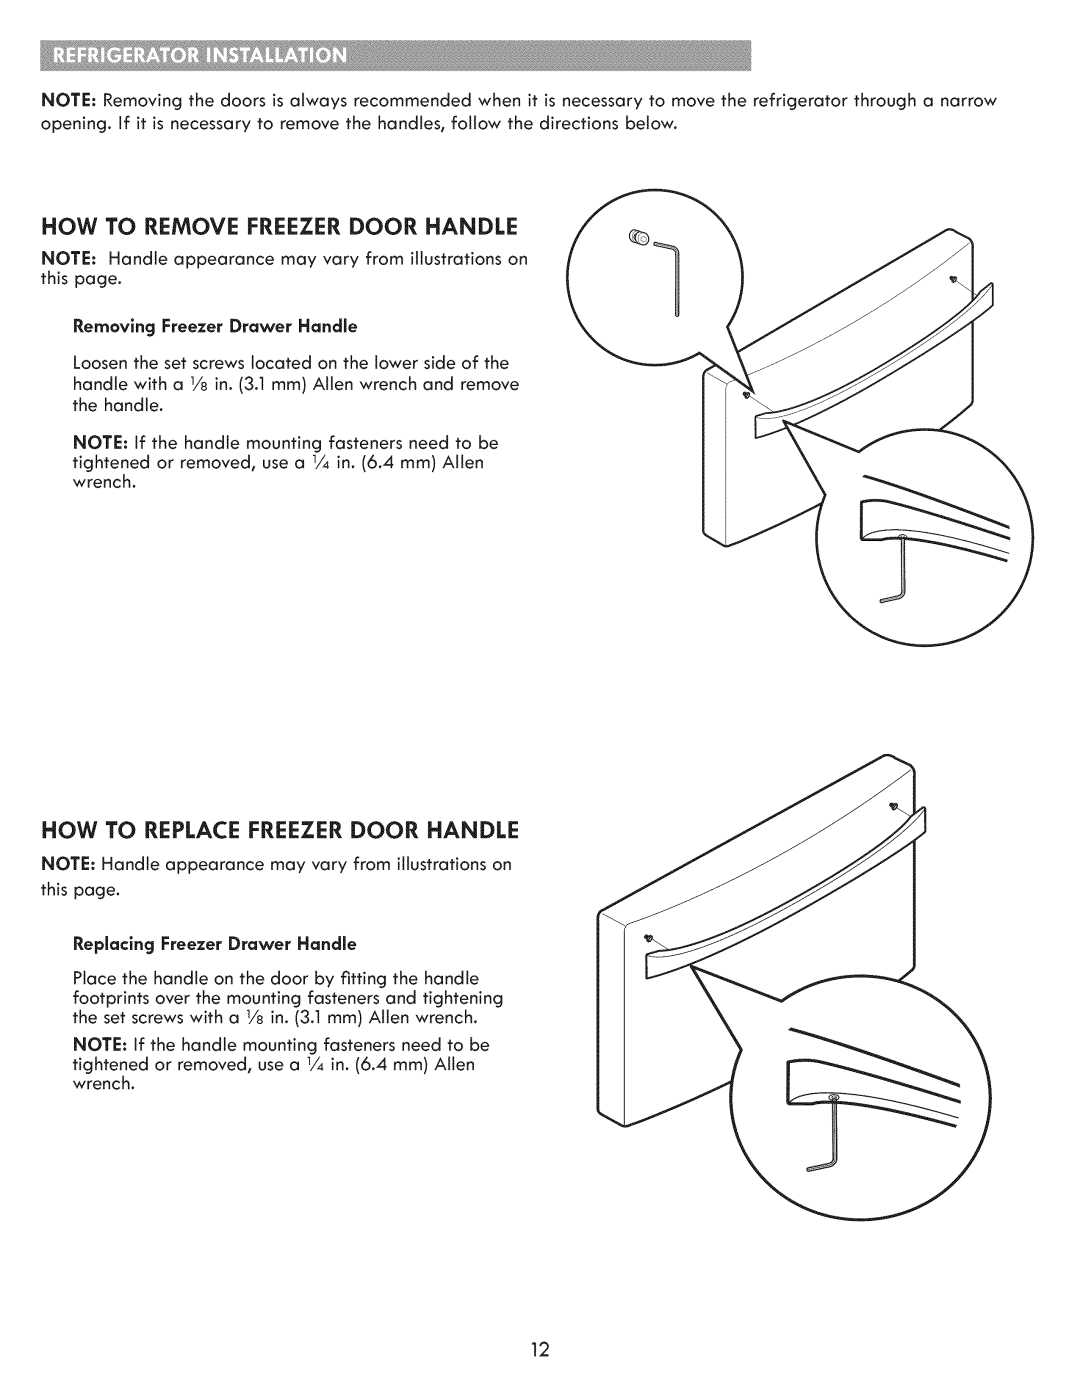 Kenmore 795.7103 manual How To Remove Freezer Door Handle, How To Replace Freezer Door Handle 